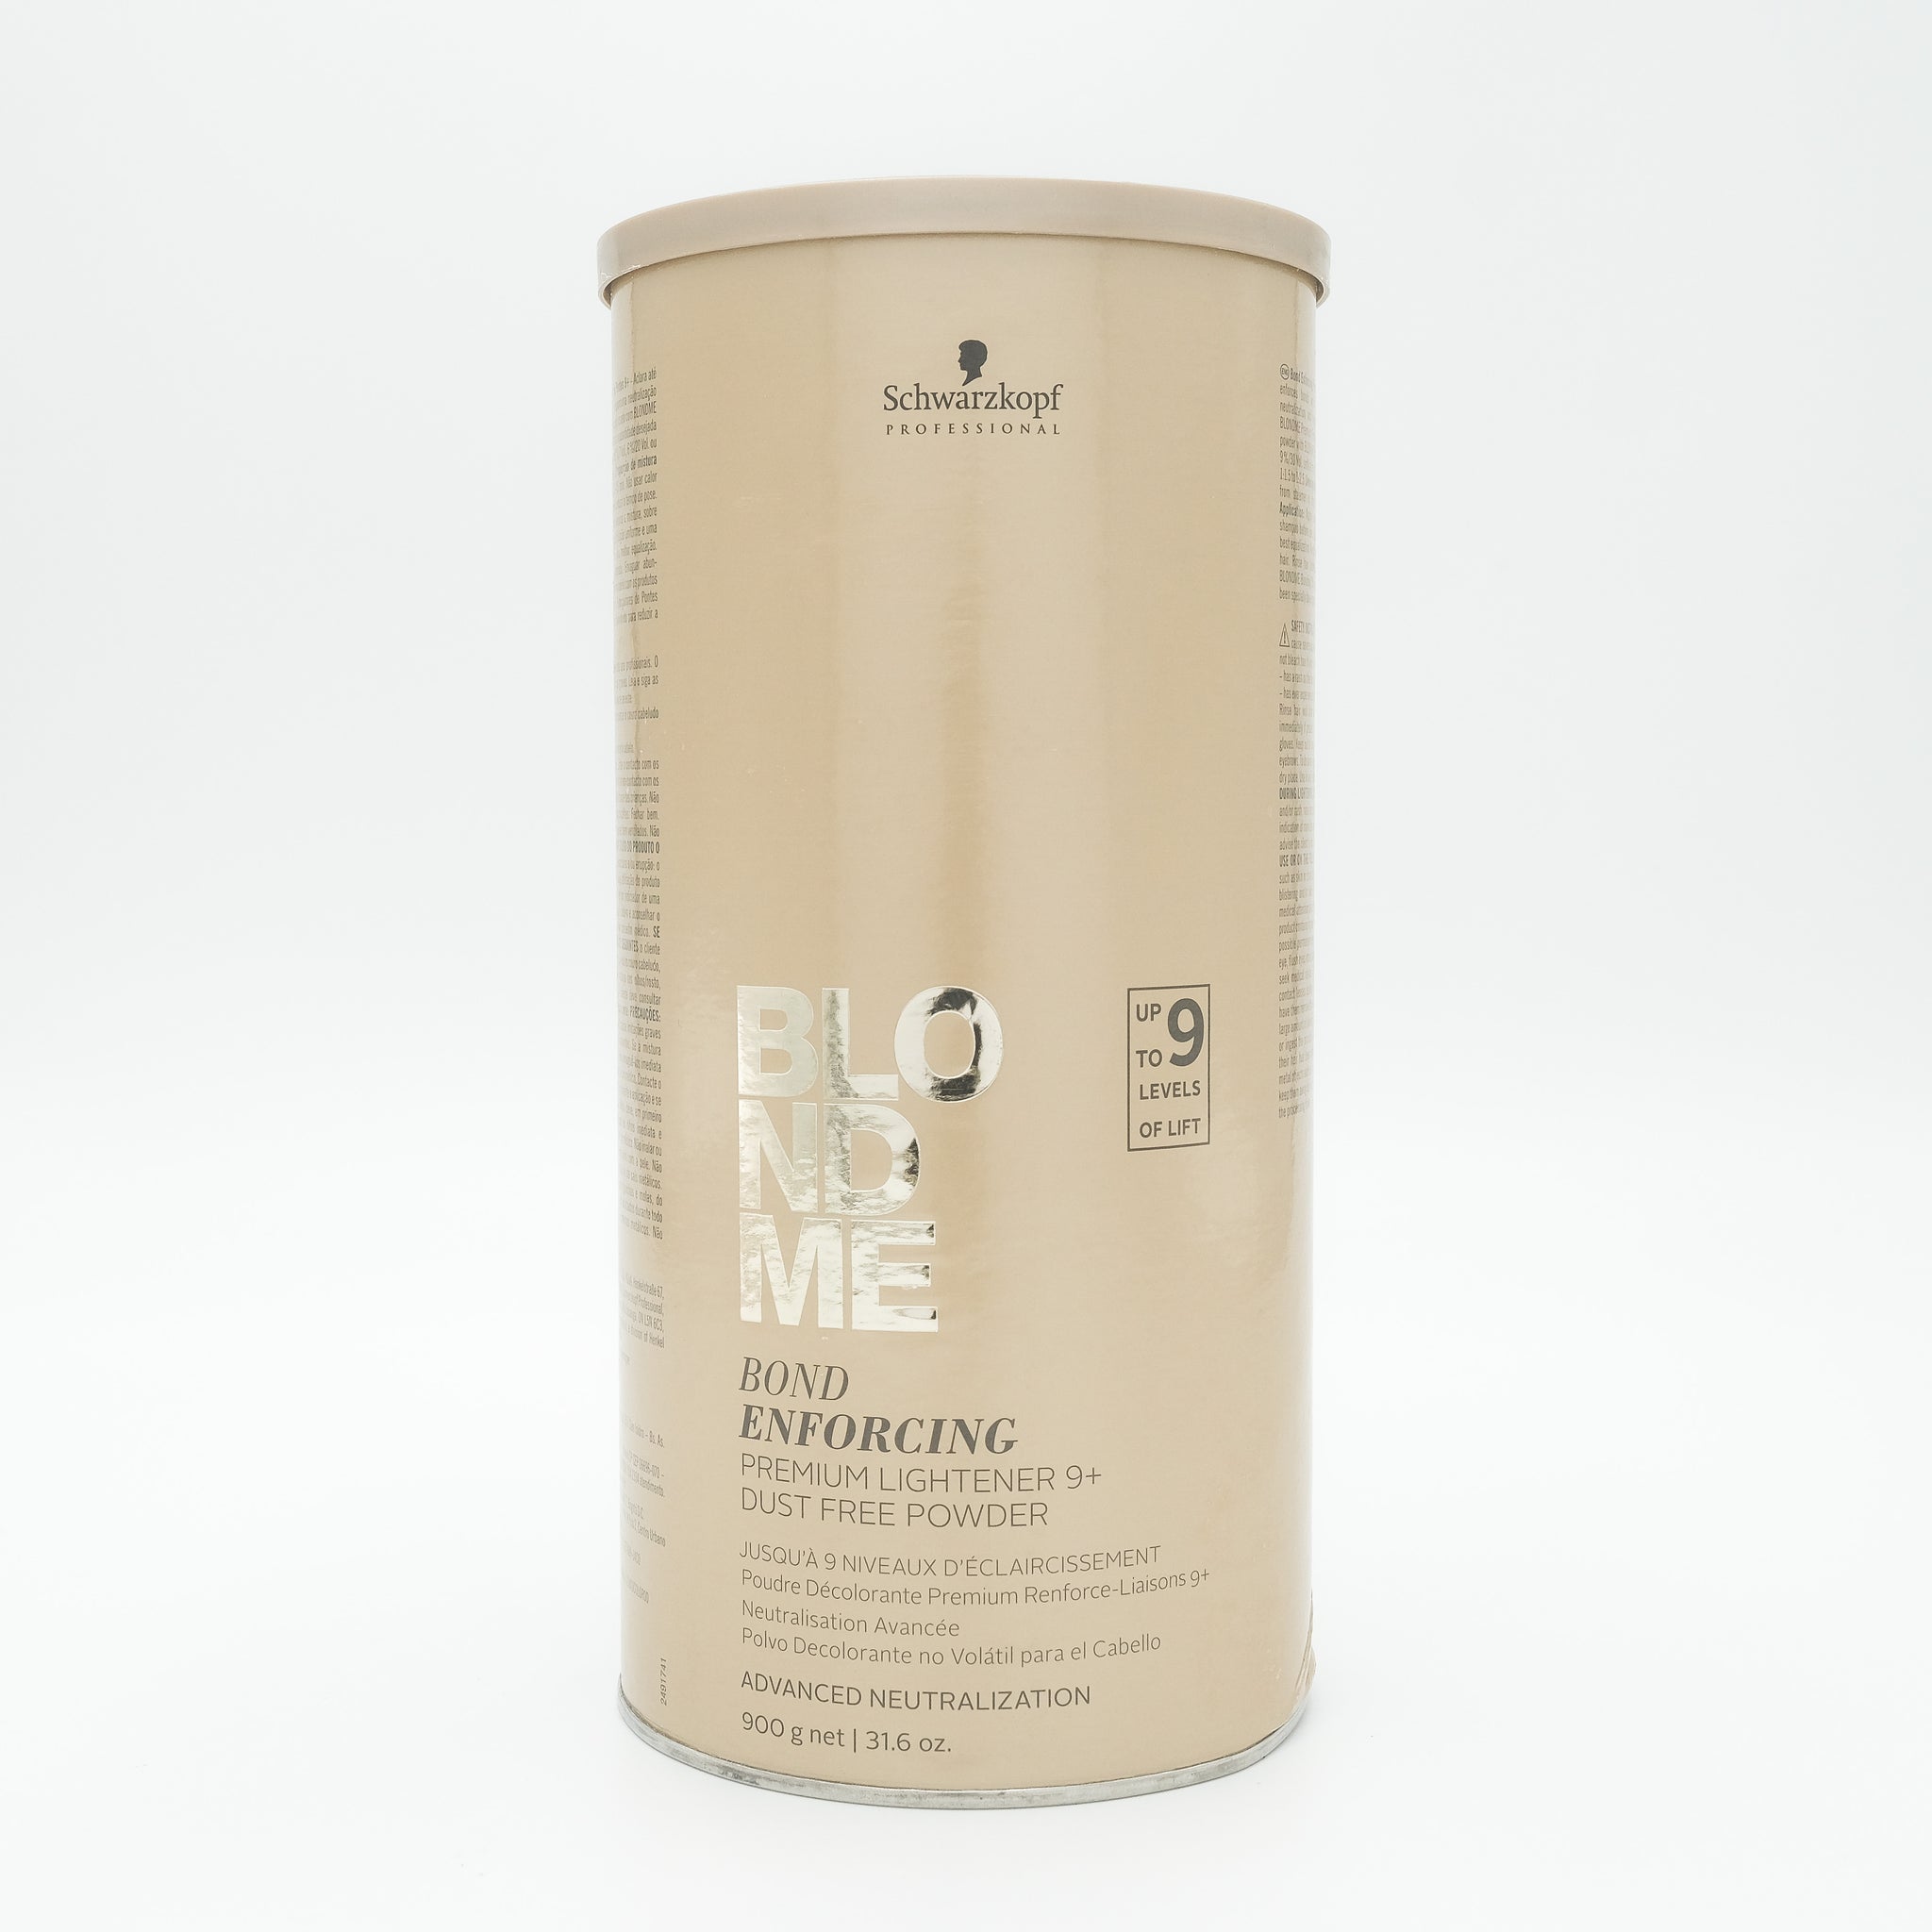 SCHWARZKOPF BlondMe Bond Enforcing Premium Lightener 9+Dust Free Powder 31.6 oz